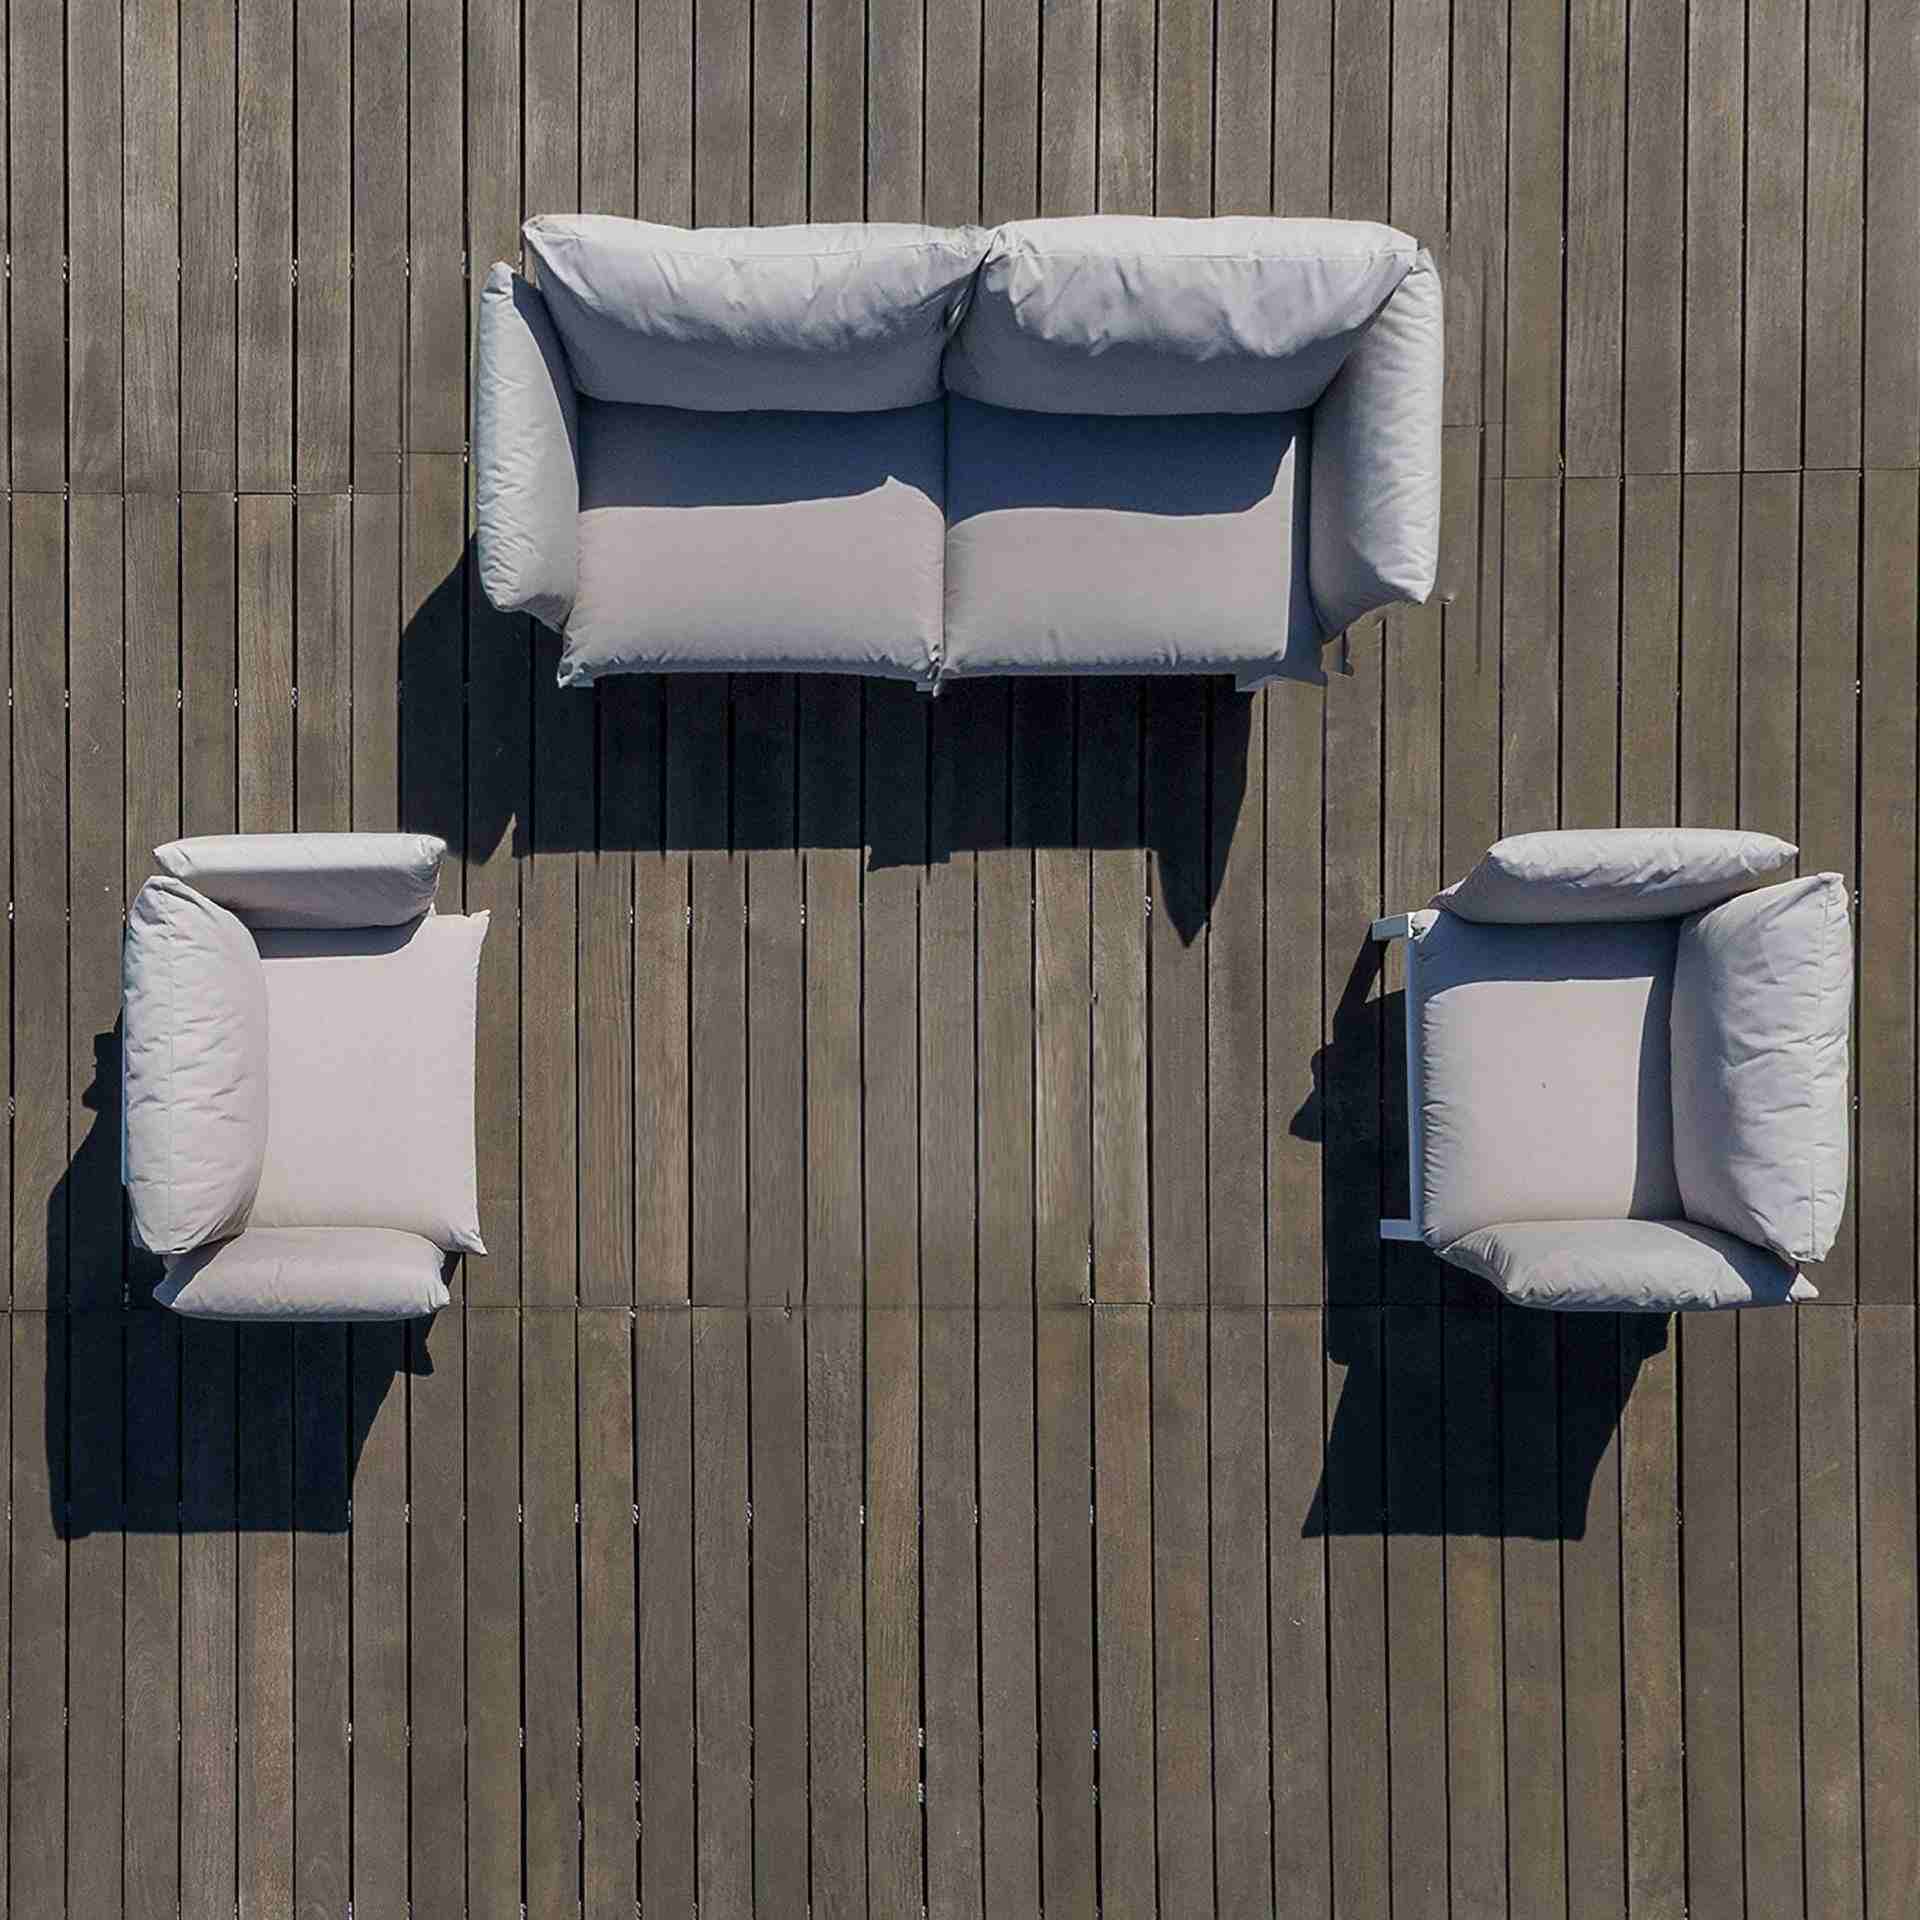 Die Sitzgruppe Domino bestehend aus einem 2-Sitzer Sofa und zwei Sesseln ist ein echter Hingucker für Deinen Garten. Gefertigt wurde sie von der Marke Jan Kurtz. Das Aluminium Gestell hat die Farbe Weiß und der Bezug hat die Farbe Taupe.